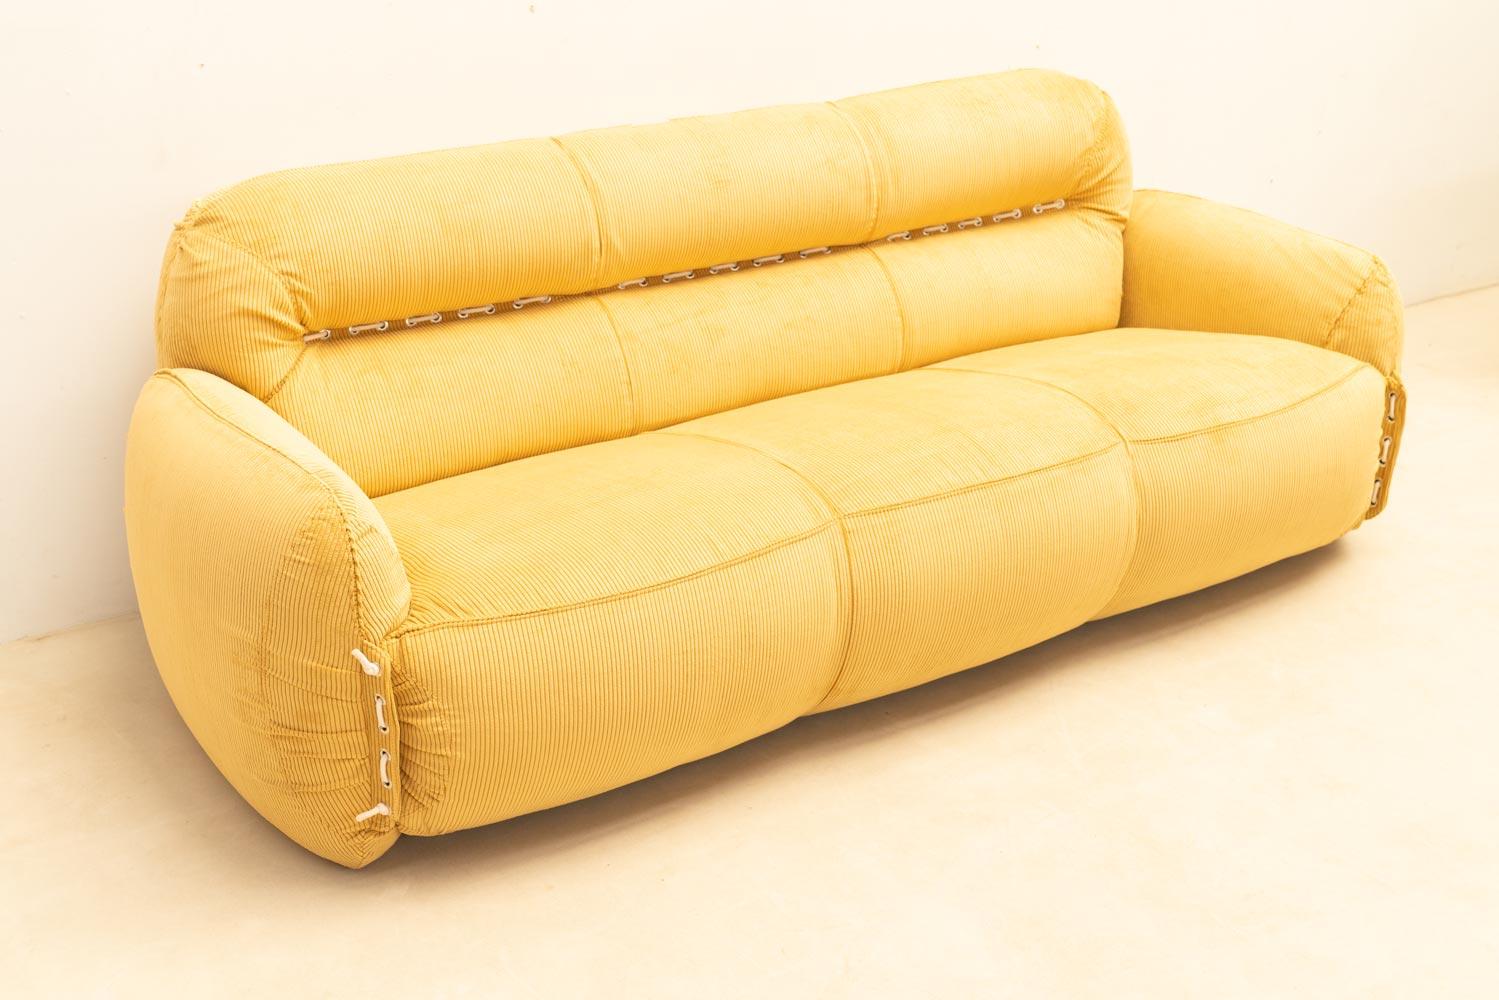 Ein sehr komfortables Design mit auffälligen Farben. Dieses italienische Sofa aus den 1970er Jahren wurde kürzlich mit leuchtend gelbem Kord bezogen. Seine großzügige Form lädt zum Sitzen und Faulenzen ein und bietet höchsten Komfort.